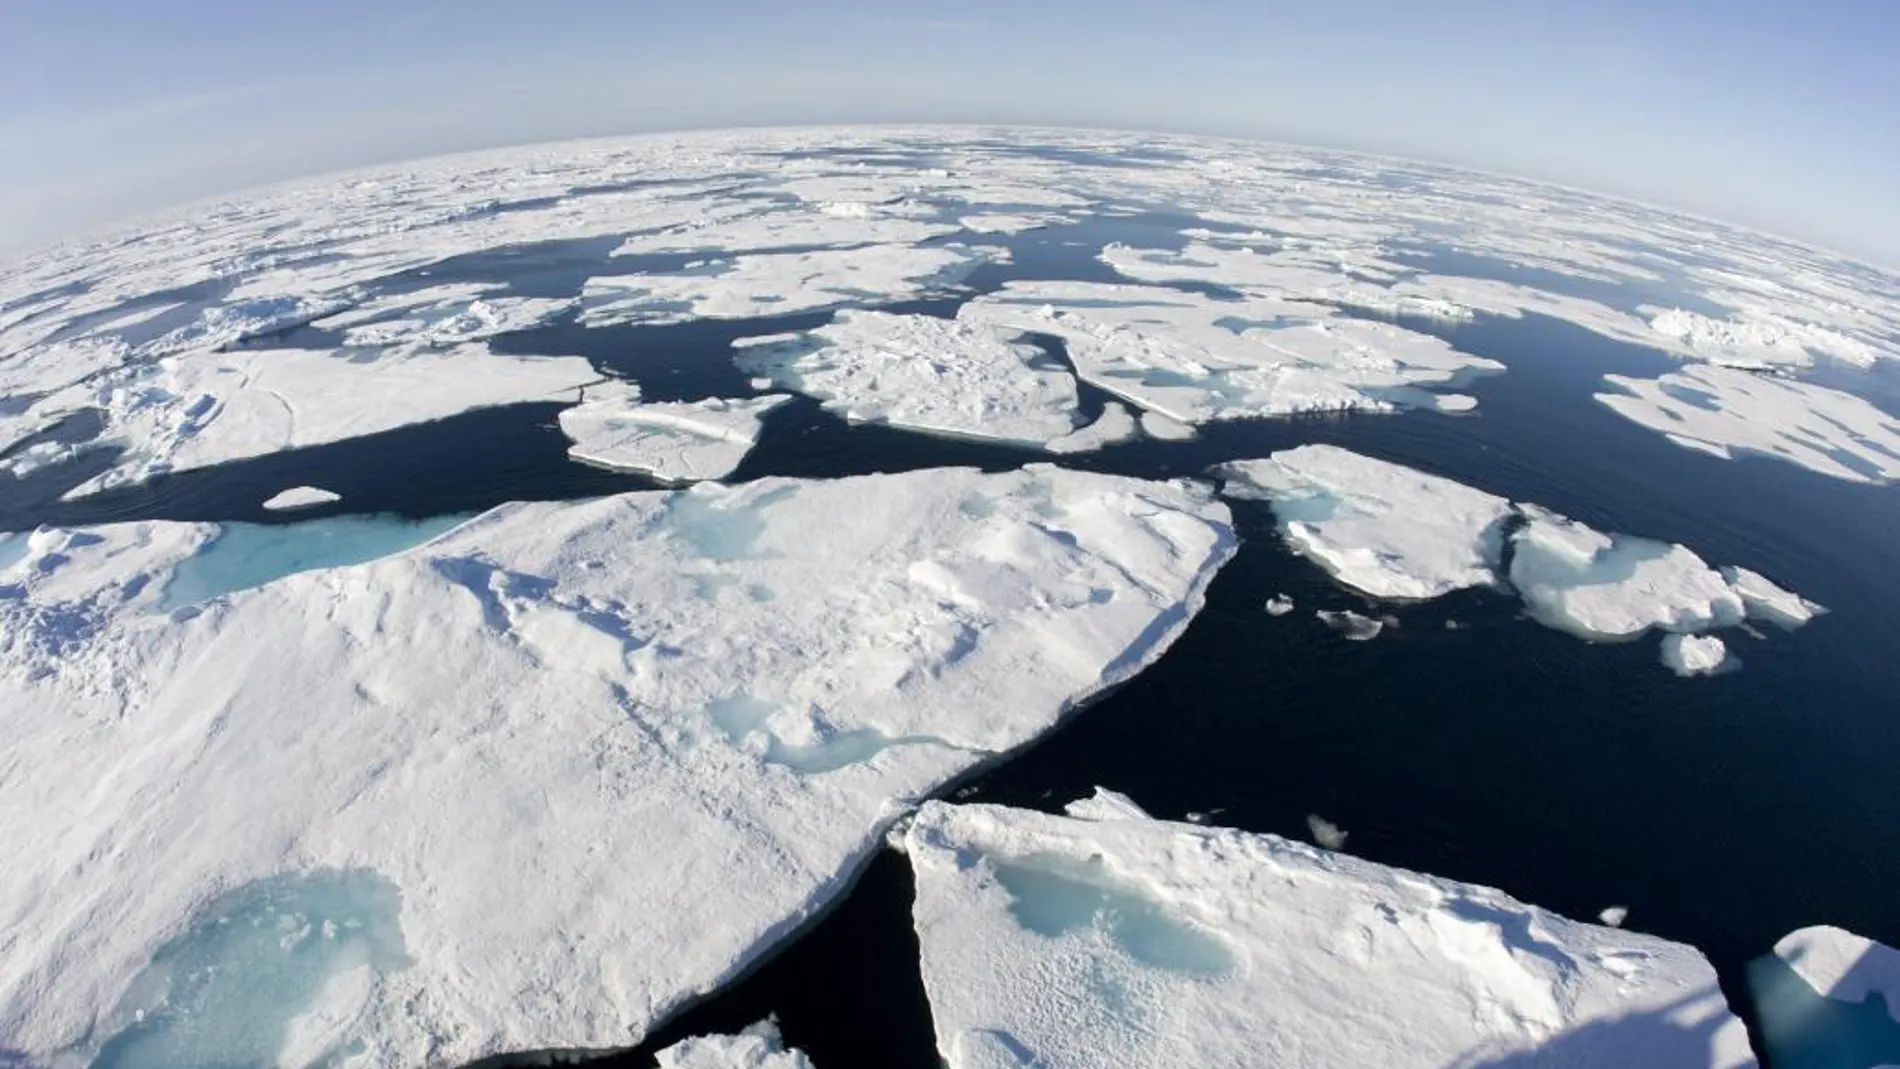 Gigantescos bloques de hielo desprendidos en el Ártico